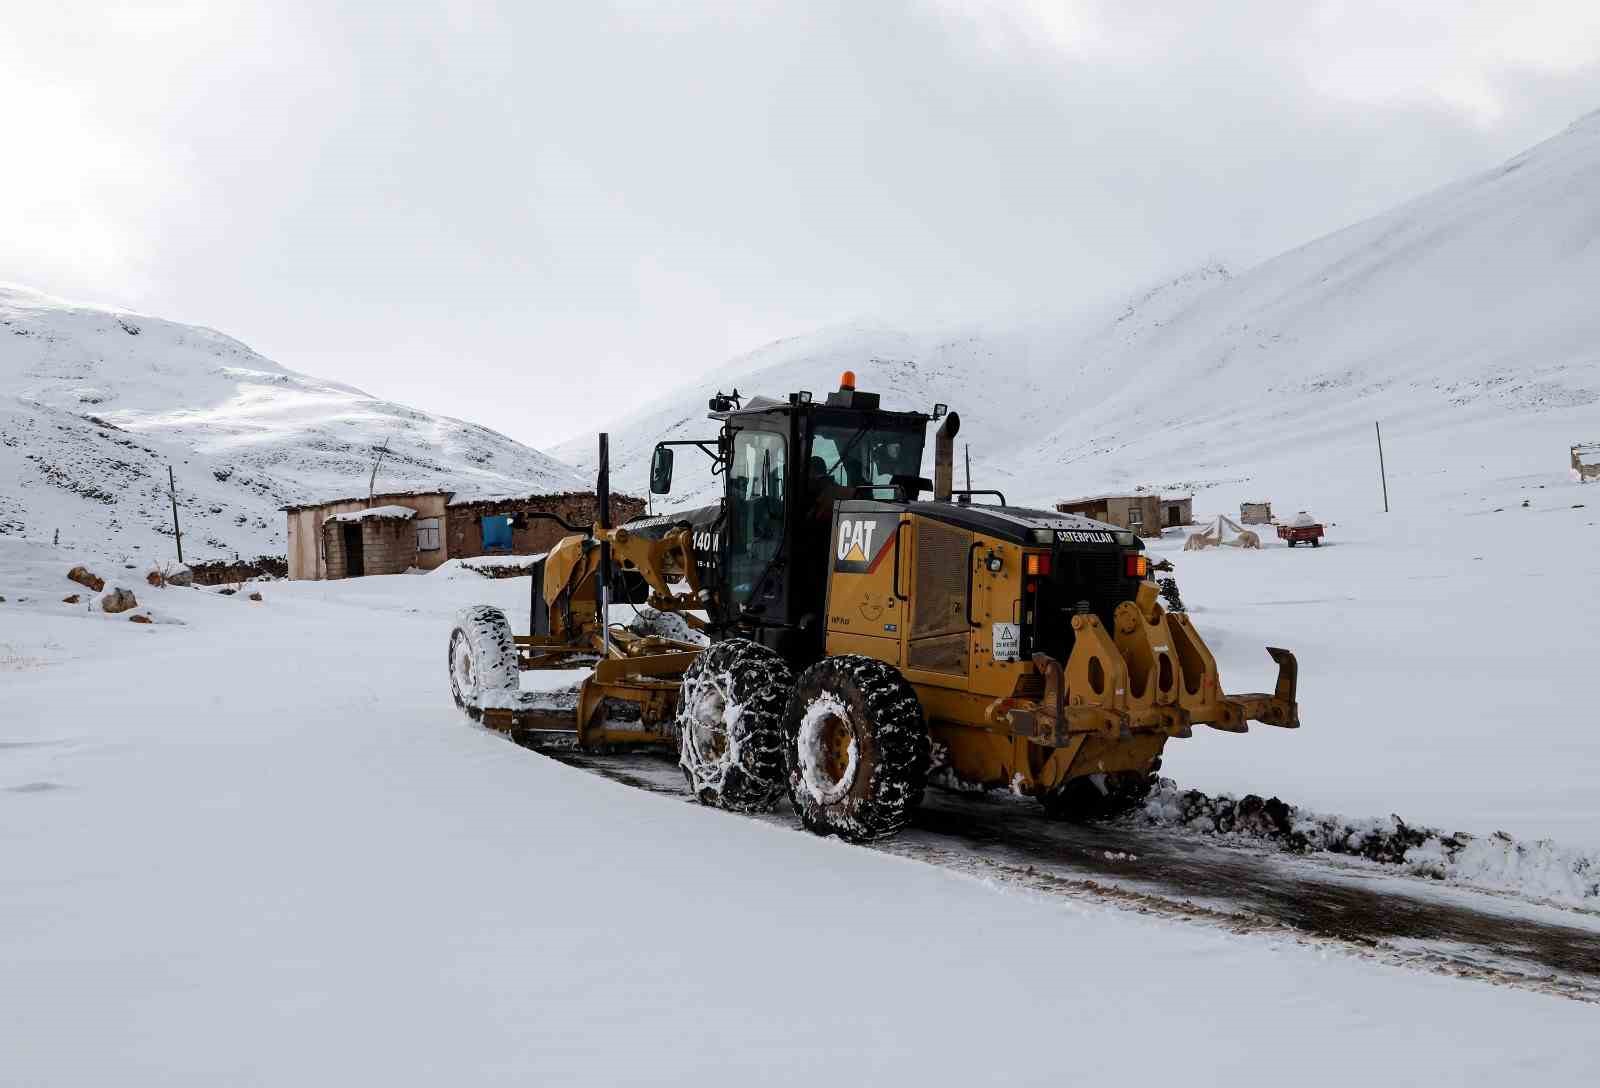 Van’da 600 personelle karla mücadele çalışması